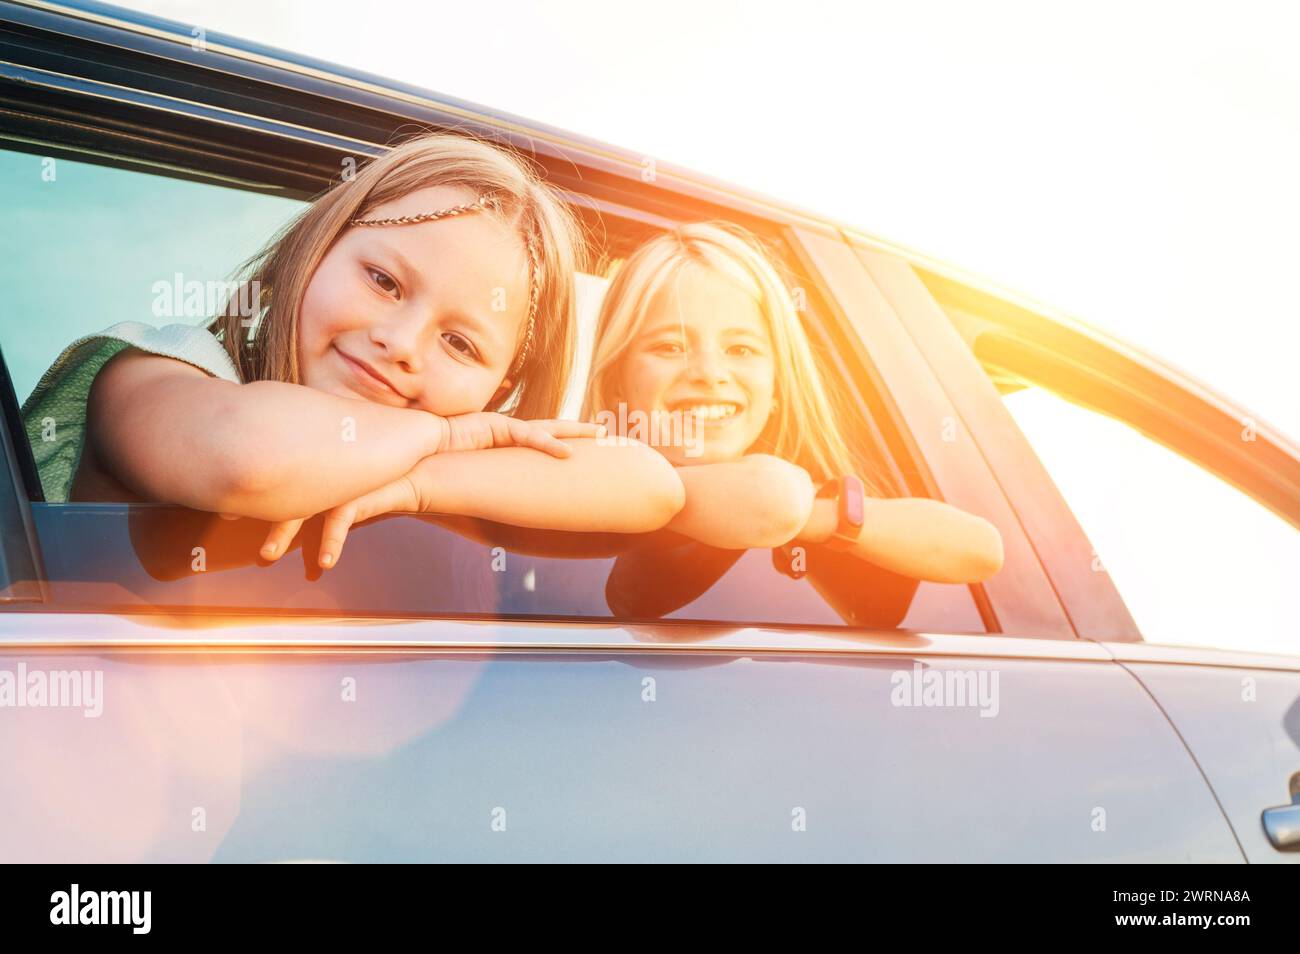 Deux sœurs heureuses regardant par la fenêtre ouverte de la voiture pendant le voyage en voiture. Les filles mignonnes sourient, rient pendant la route jorney. Valeurs familiales, concept de voyage Banque D'Images